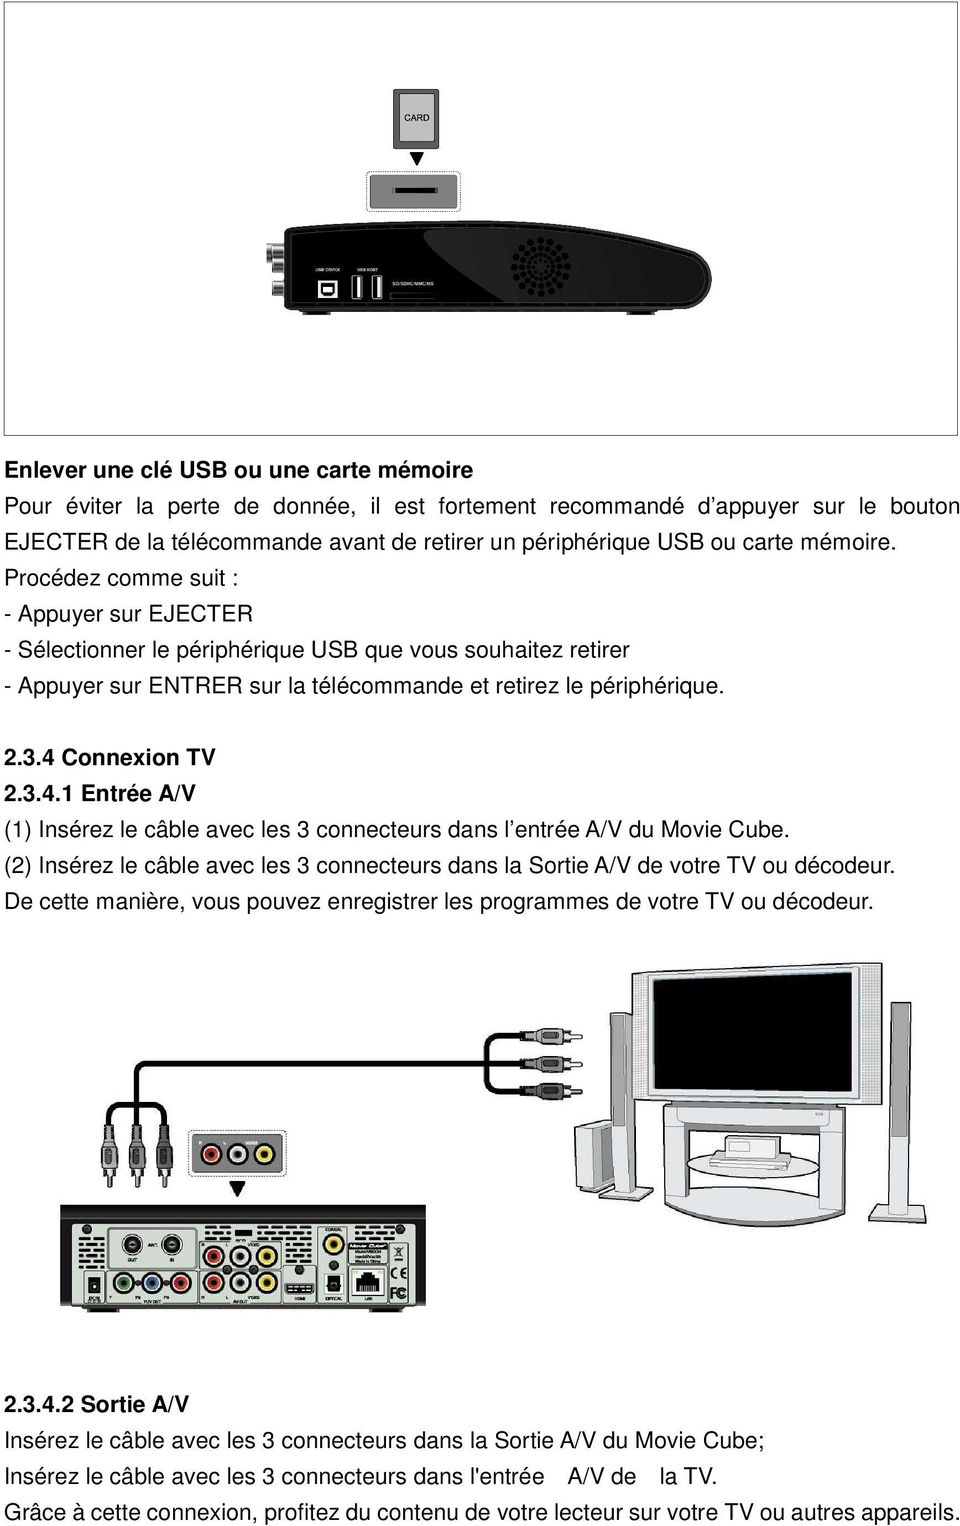 4 Connexion TV 2.3.4.1 Entrée A/V (1) Insérez le câble avec les 3 connecteurs dans l entrée A/V du Movie Cube. (2) Insérez le câble avec les 3 connecteurs dans la Sortie A/V de votre TV ou décodeur.